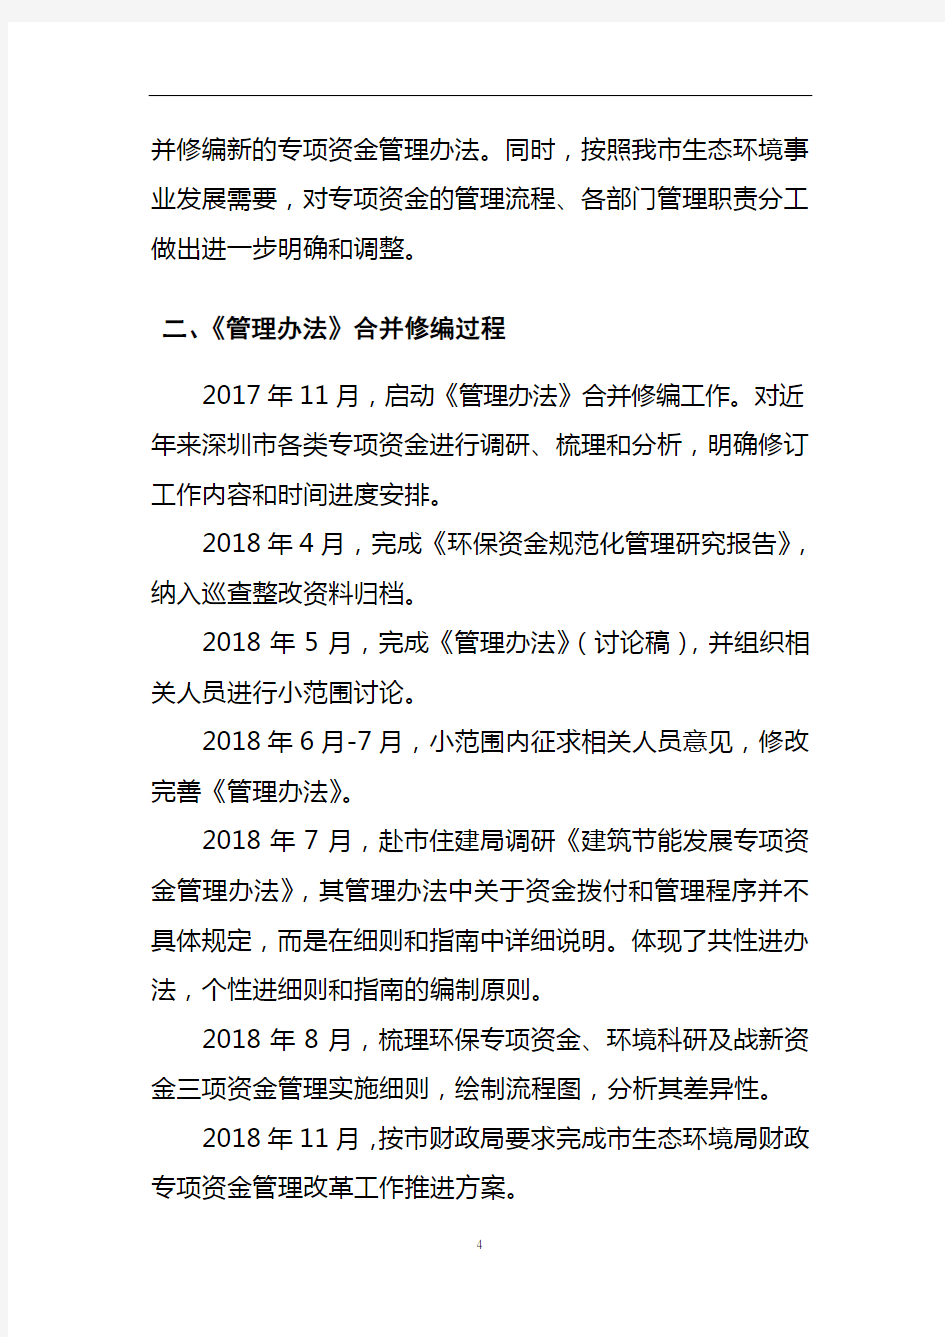 《深圳市生态环境专项资金管理办法(征求意见稿)》修订说明